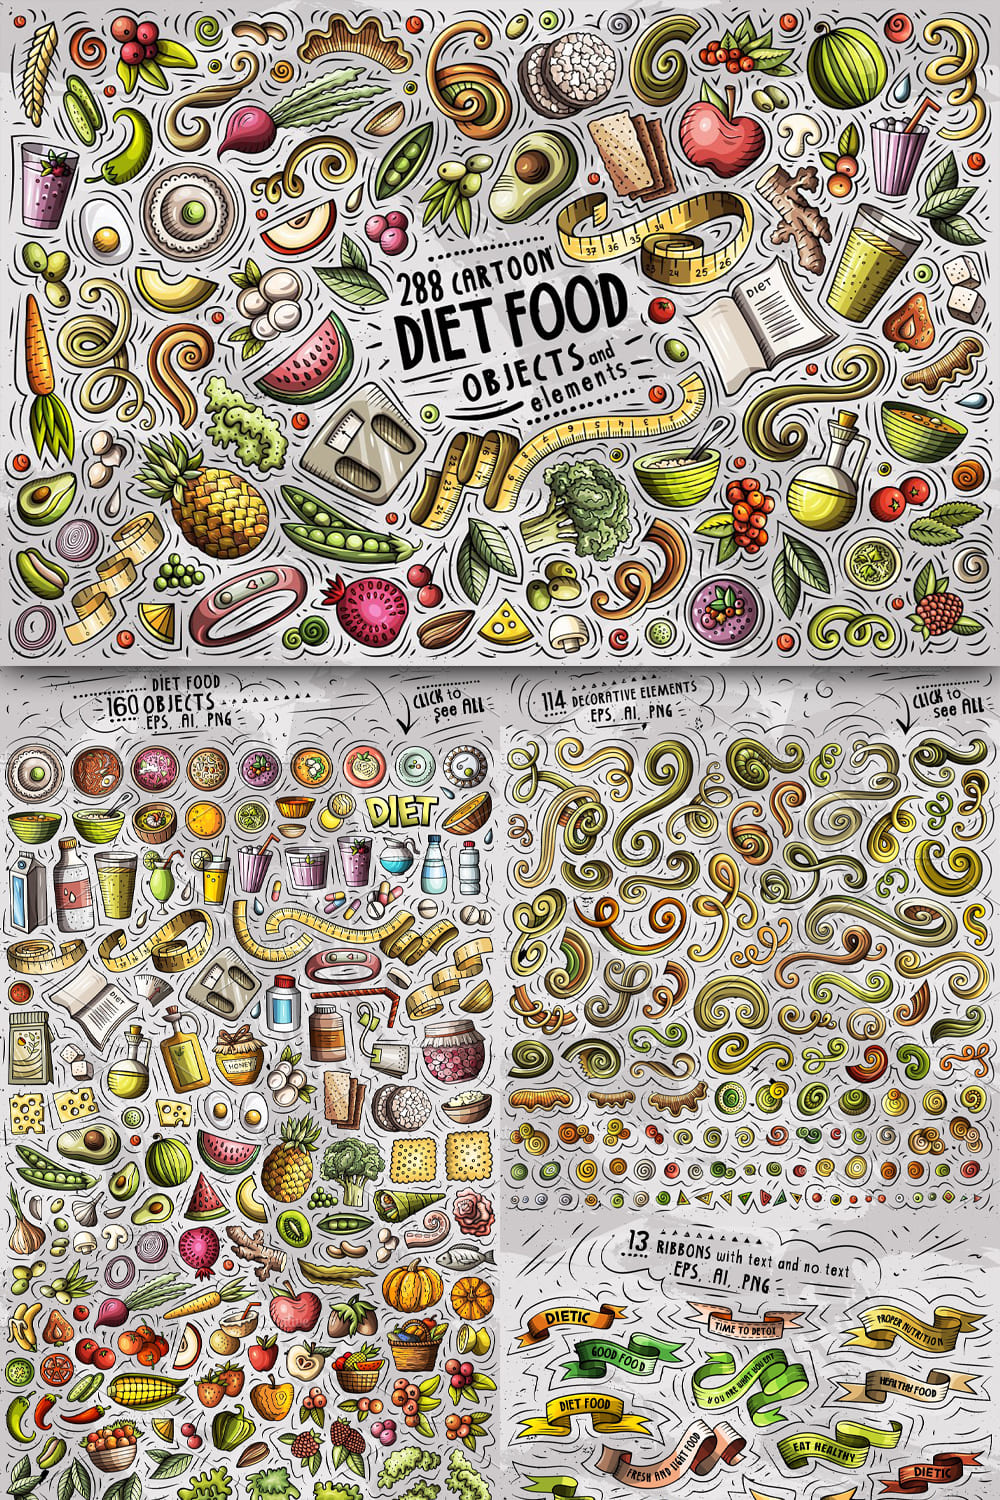 Diet Food Cartoon Vector Objects Set Pinterest 1000 1500.